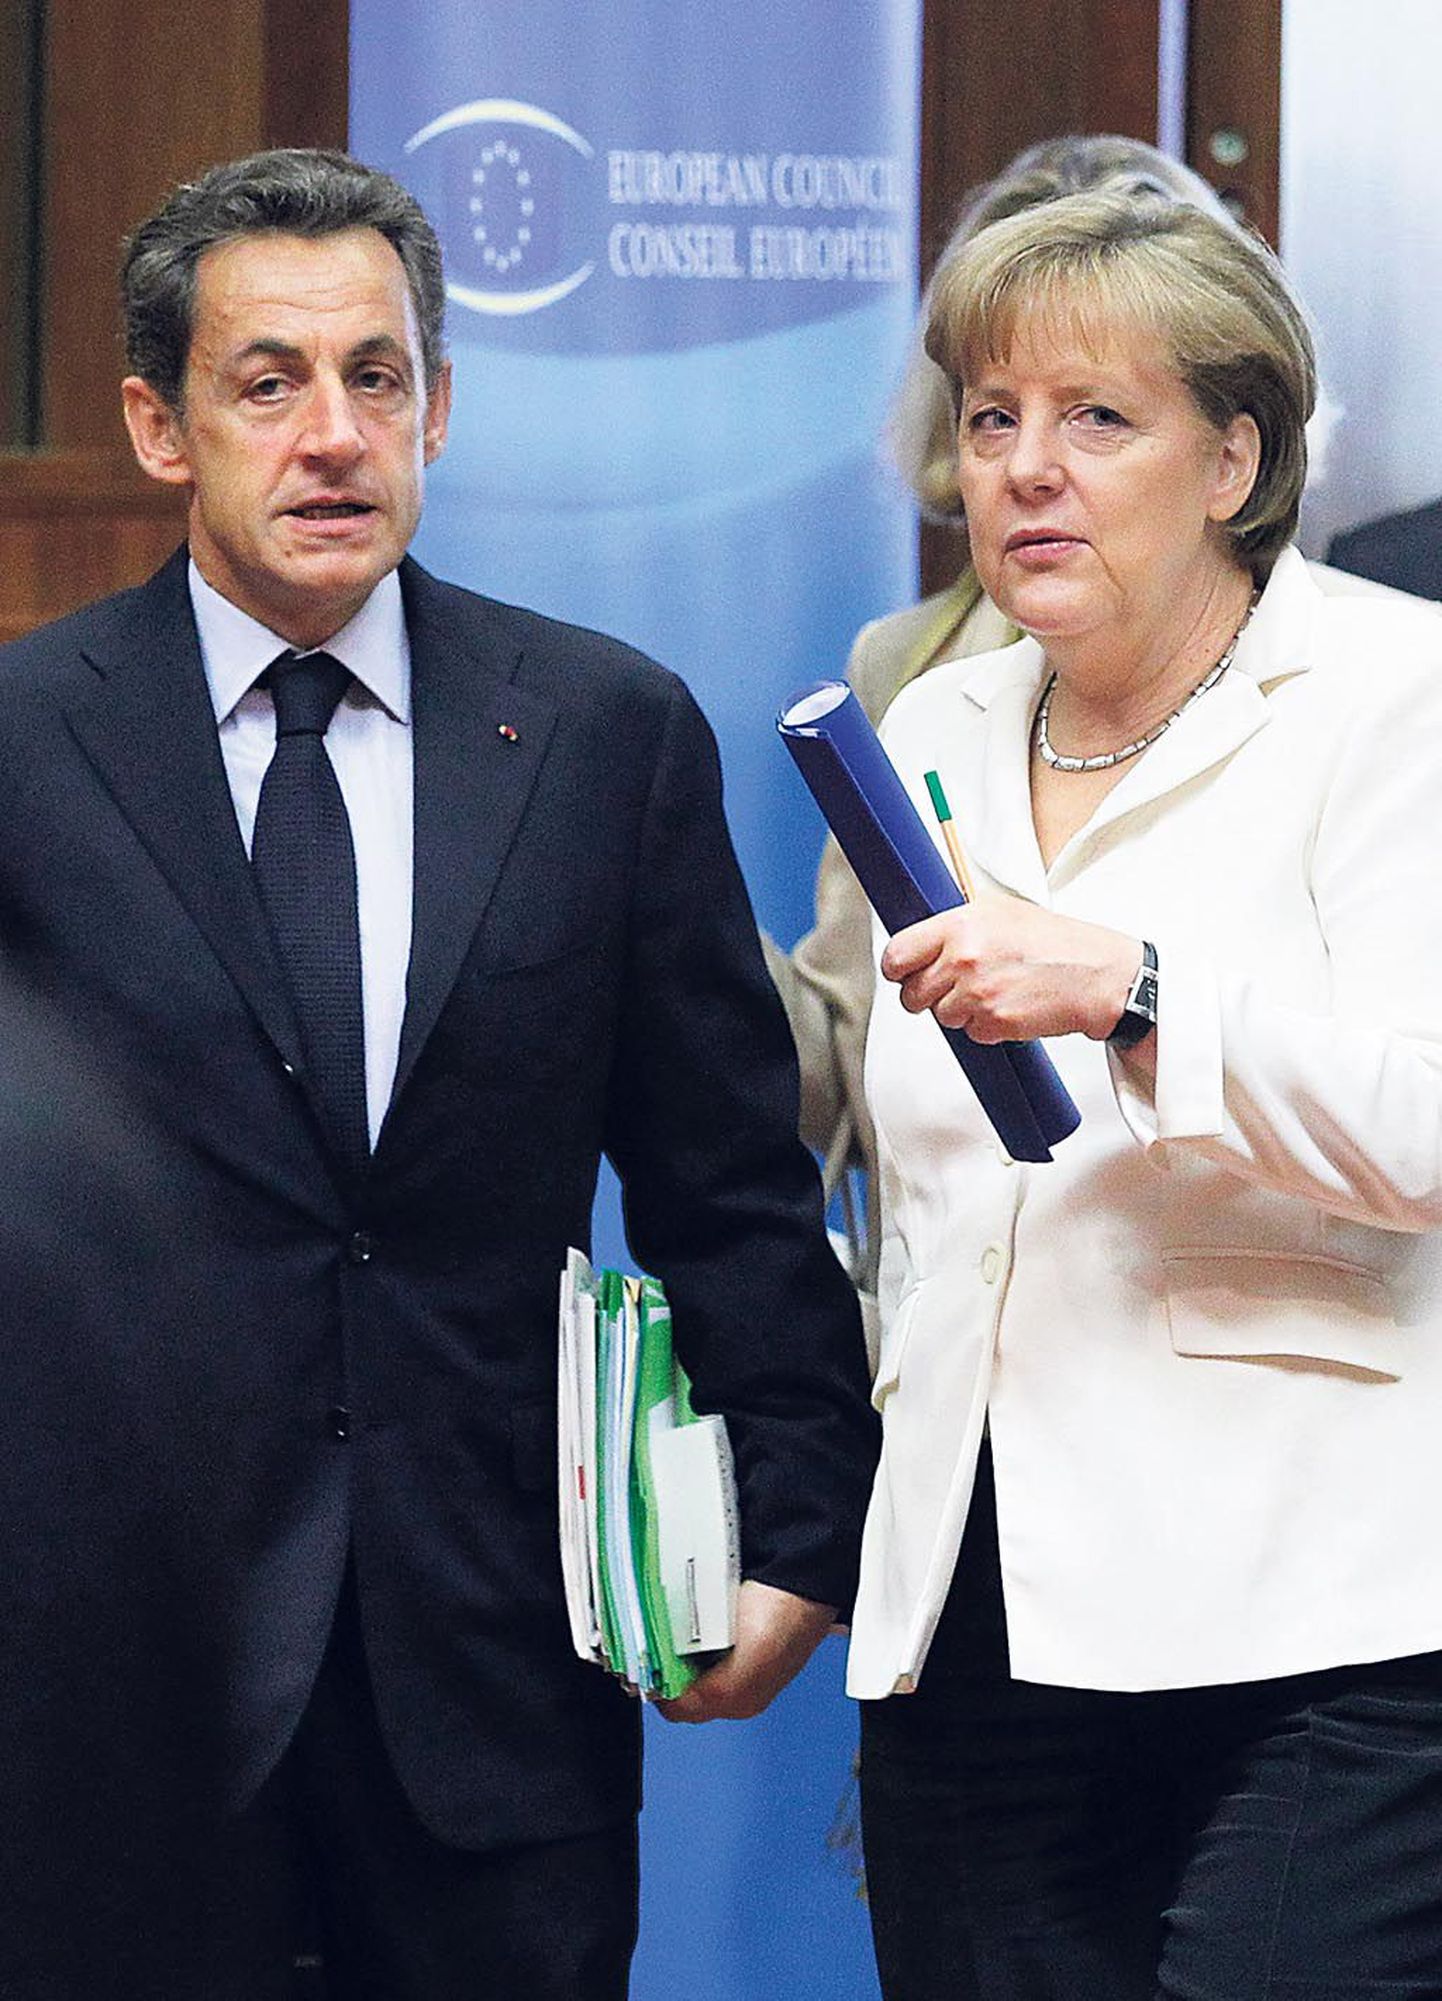 Nicolas Sarkozy ja Angela Merkel otsustasid, teised kiitsid nende otsuse Euroopa Ülemkogul heaks.